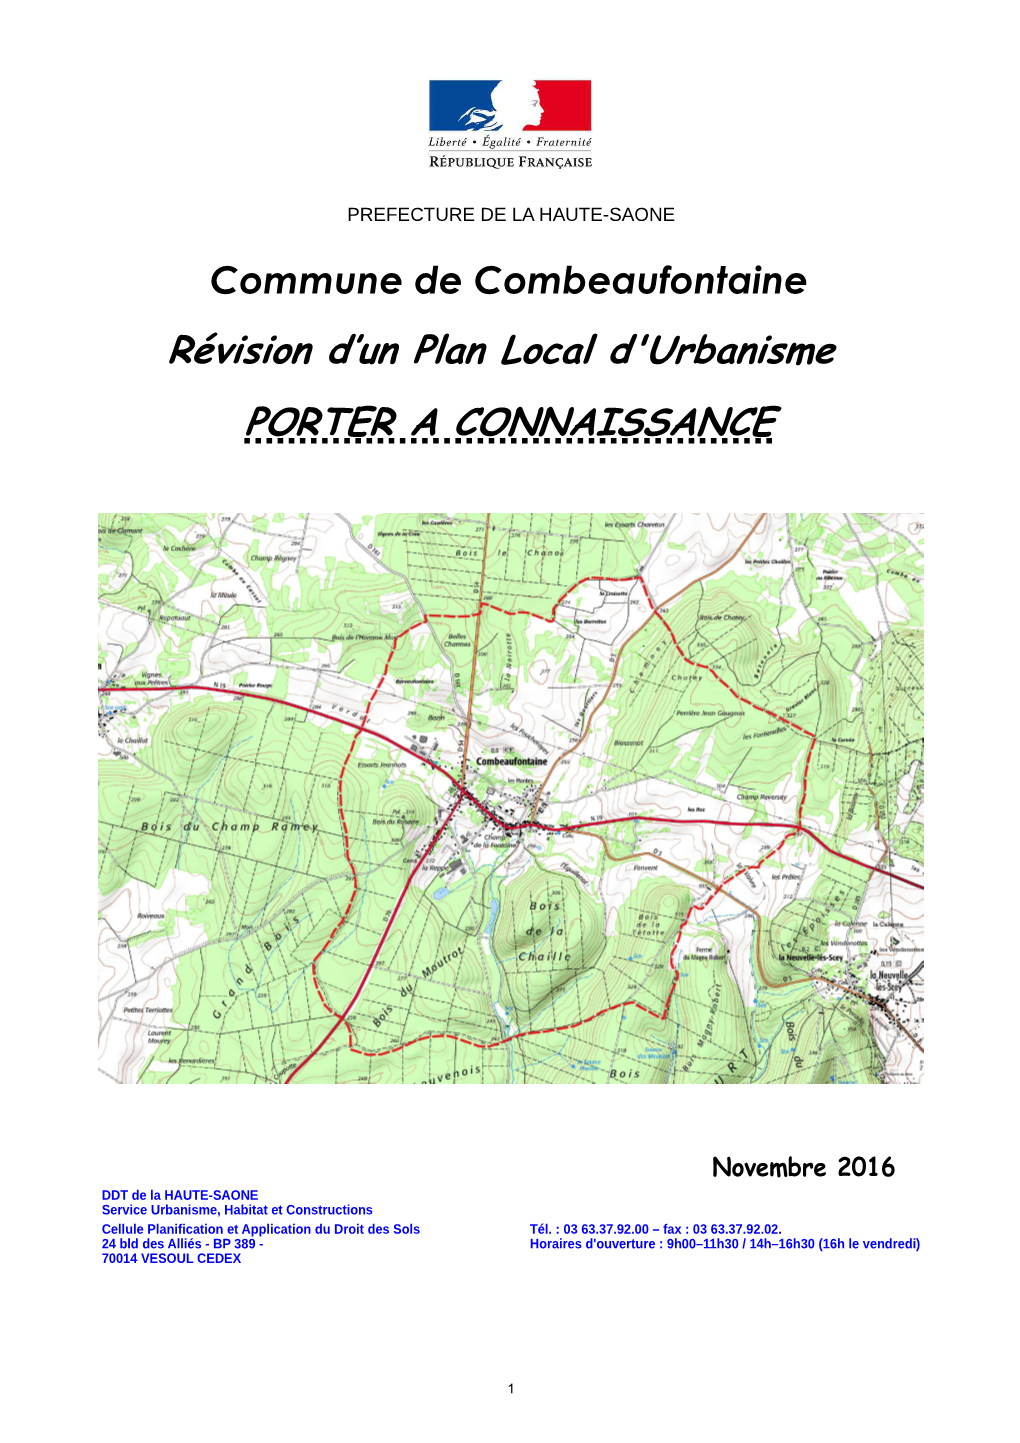 PAC Combeaufontaine Nov 2016